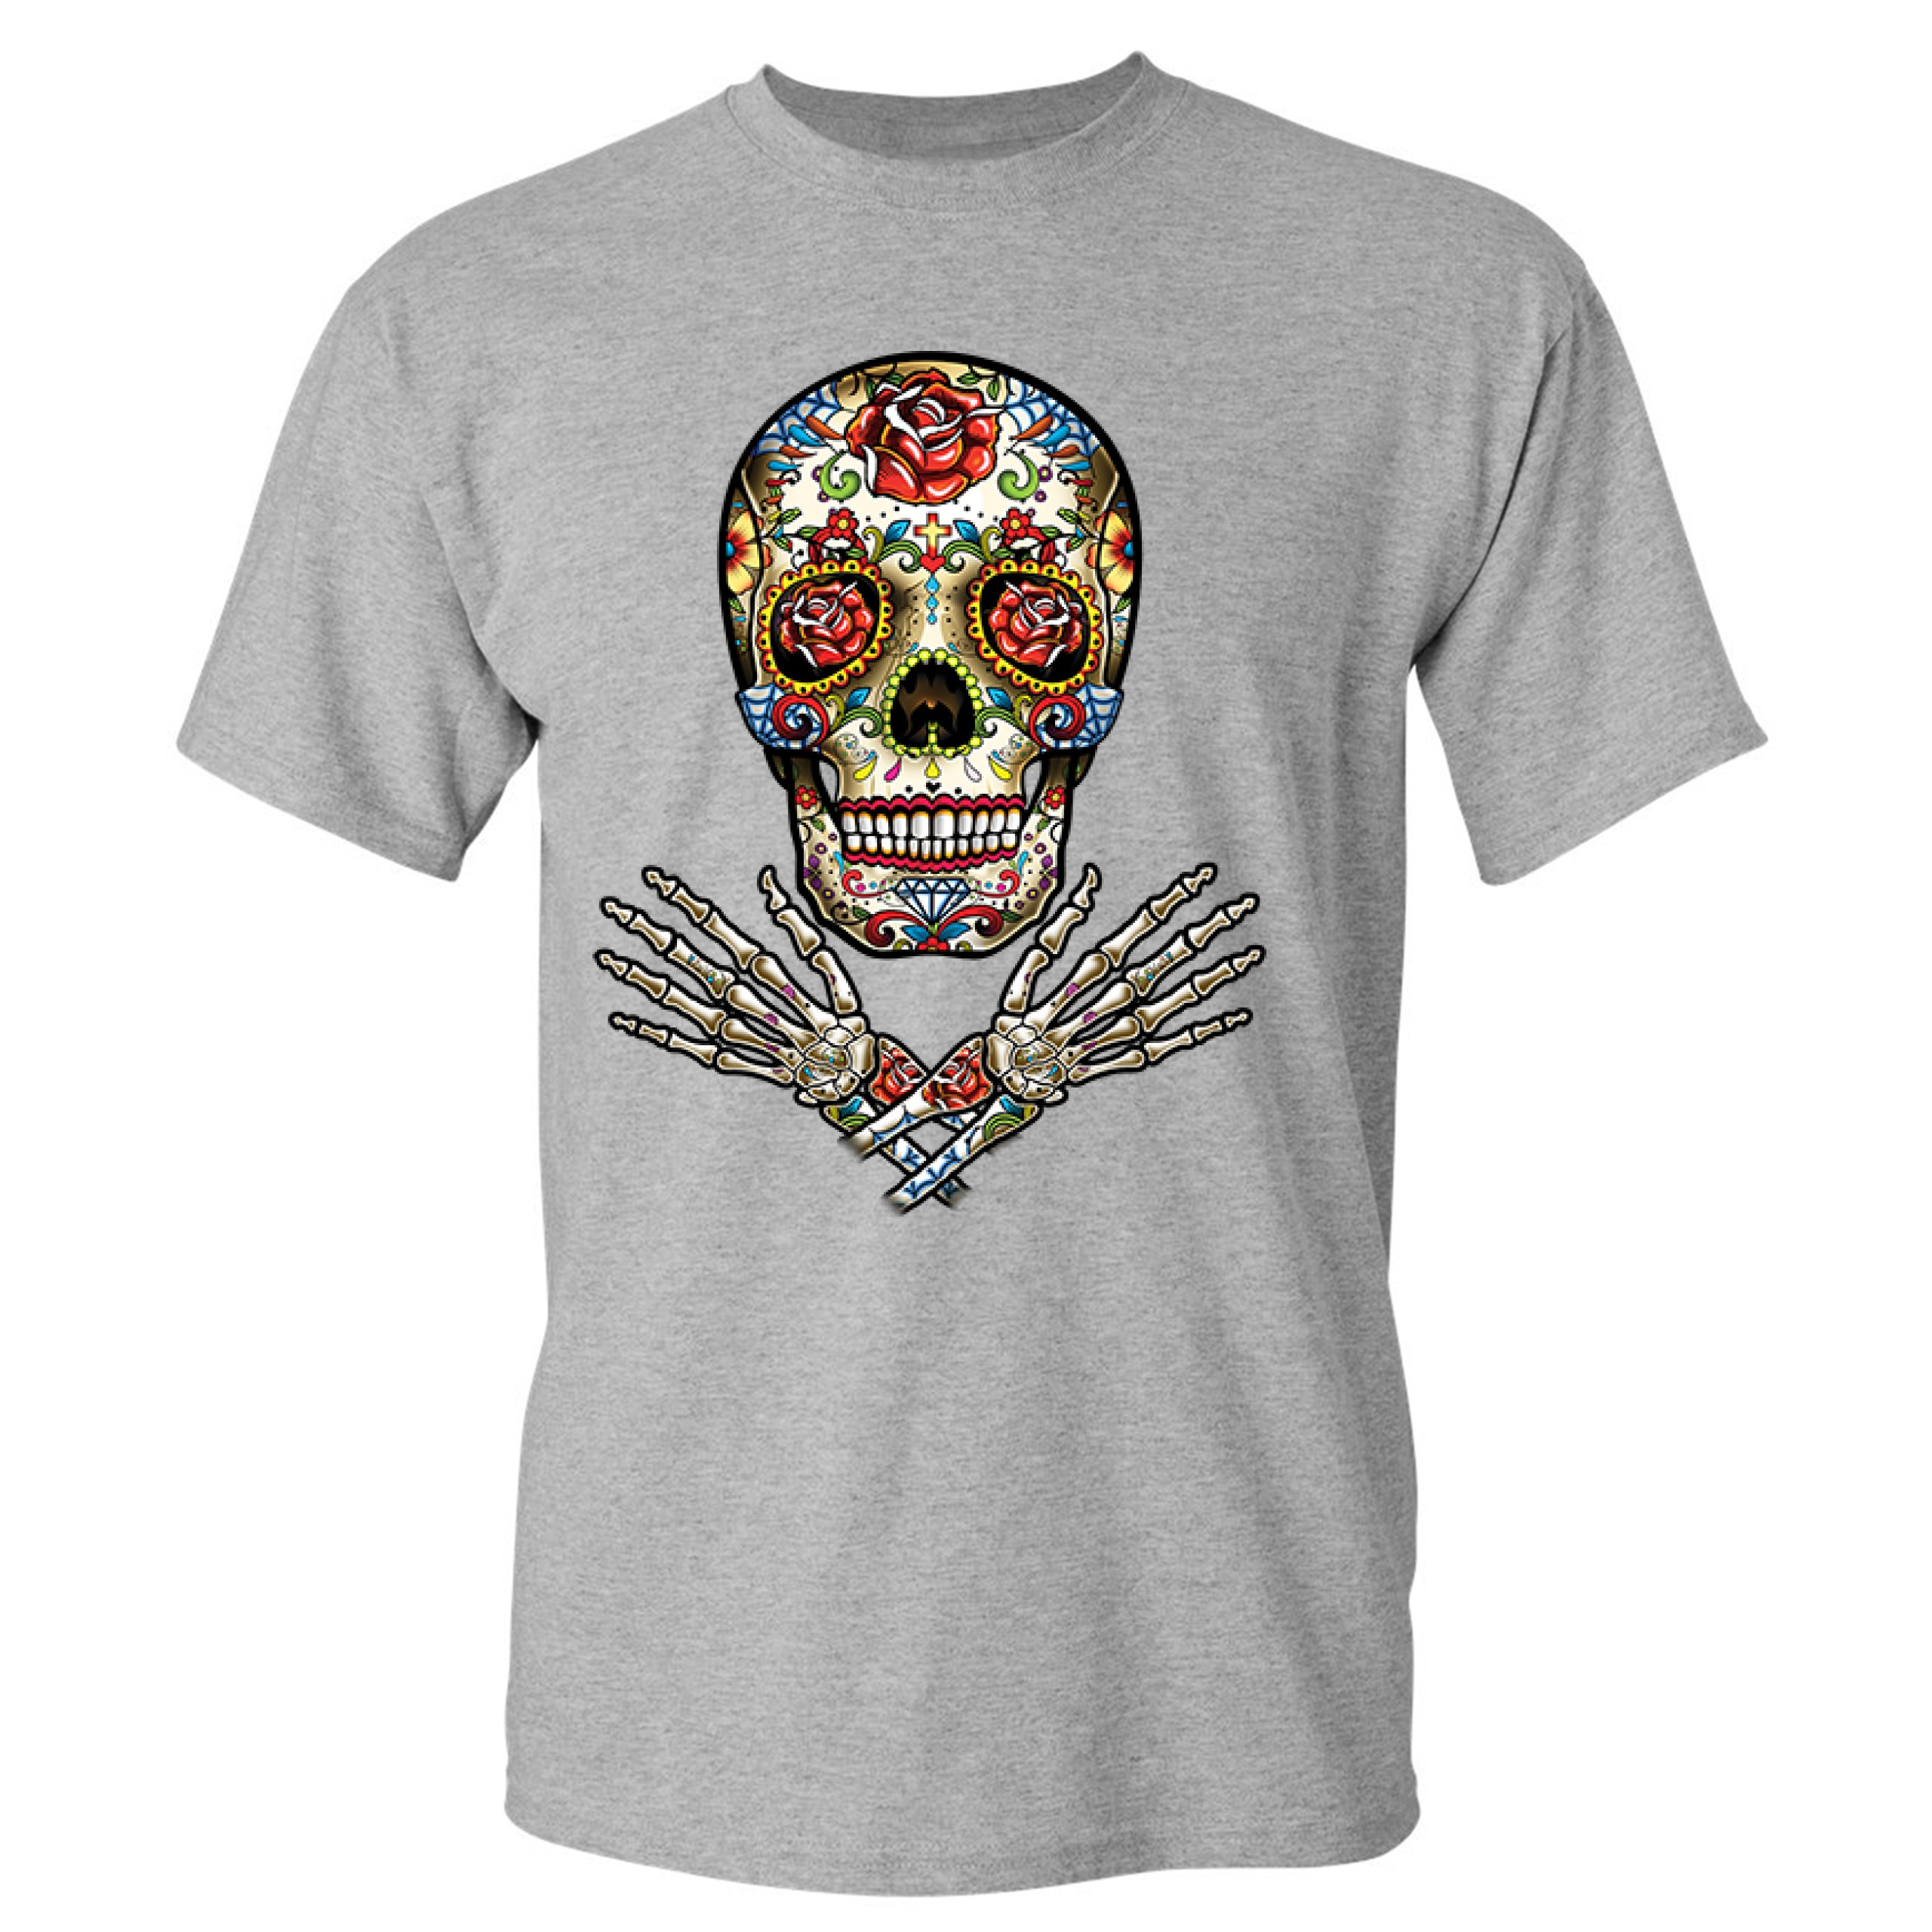 Calavera Arms Crossed T-shirt Dia de los Muertos Day of the Dead Men's ...